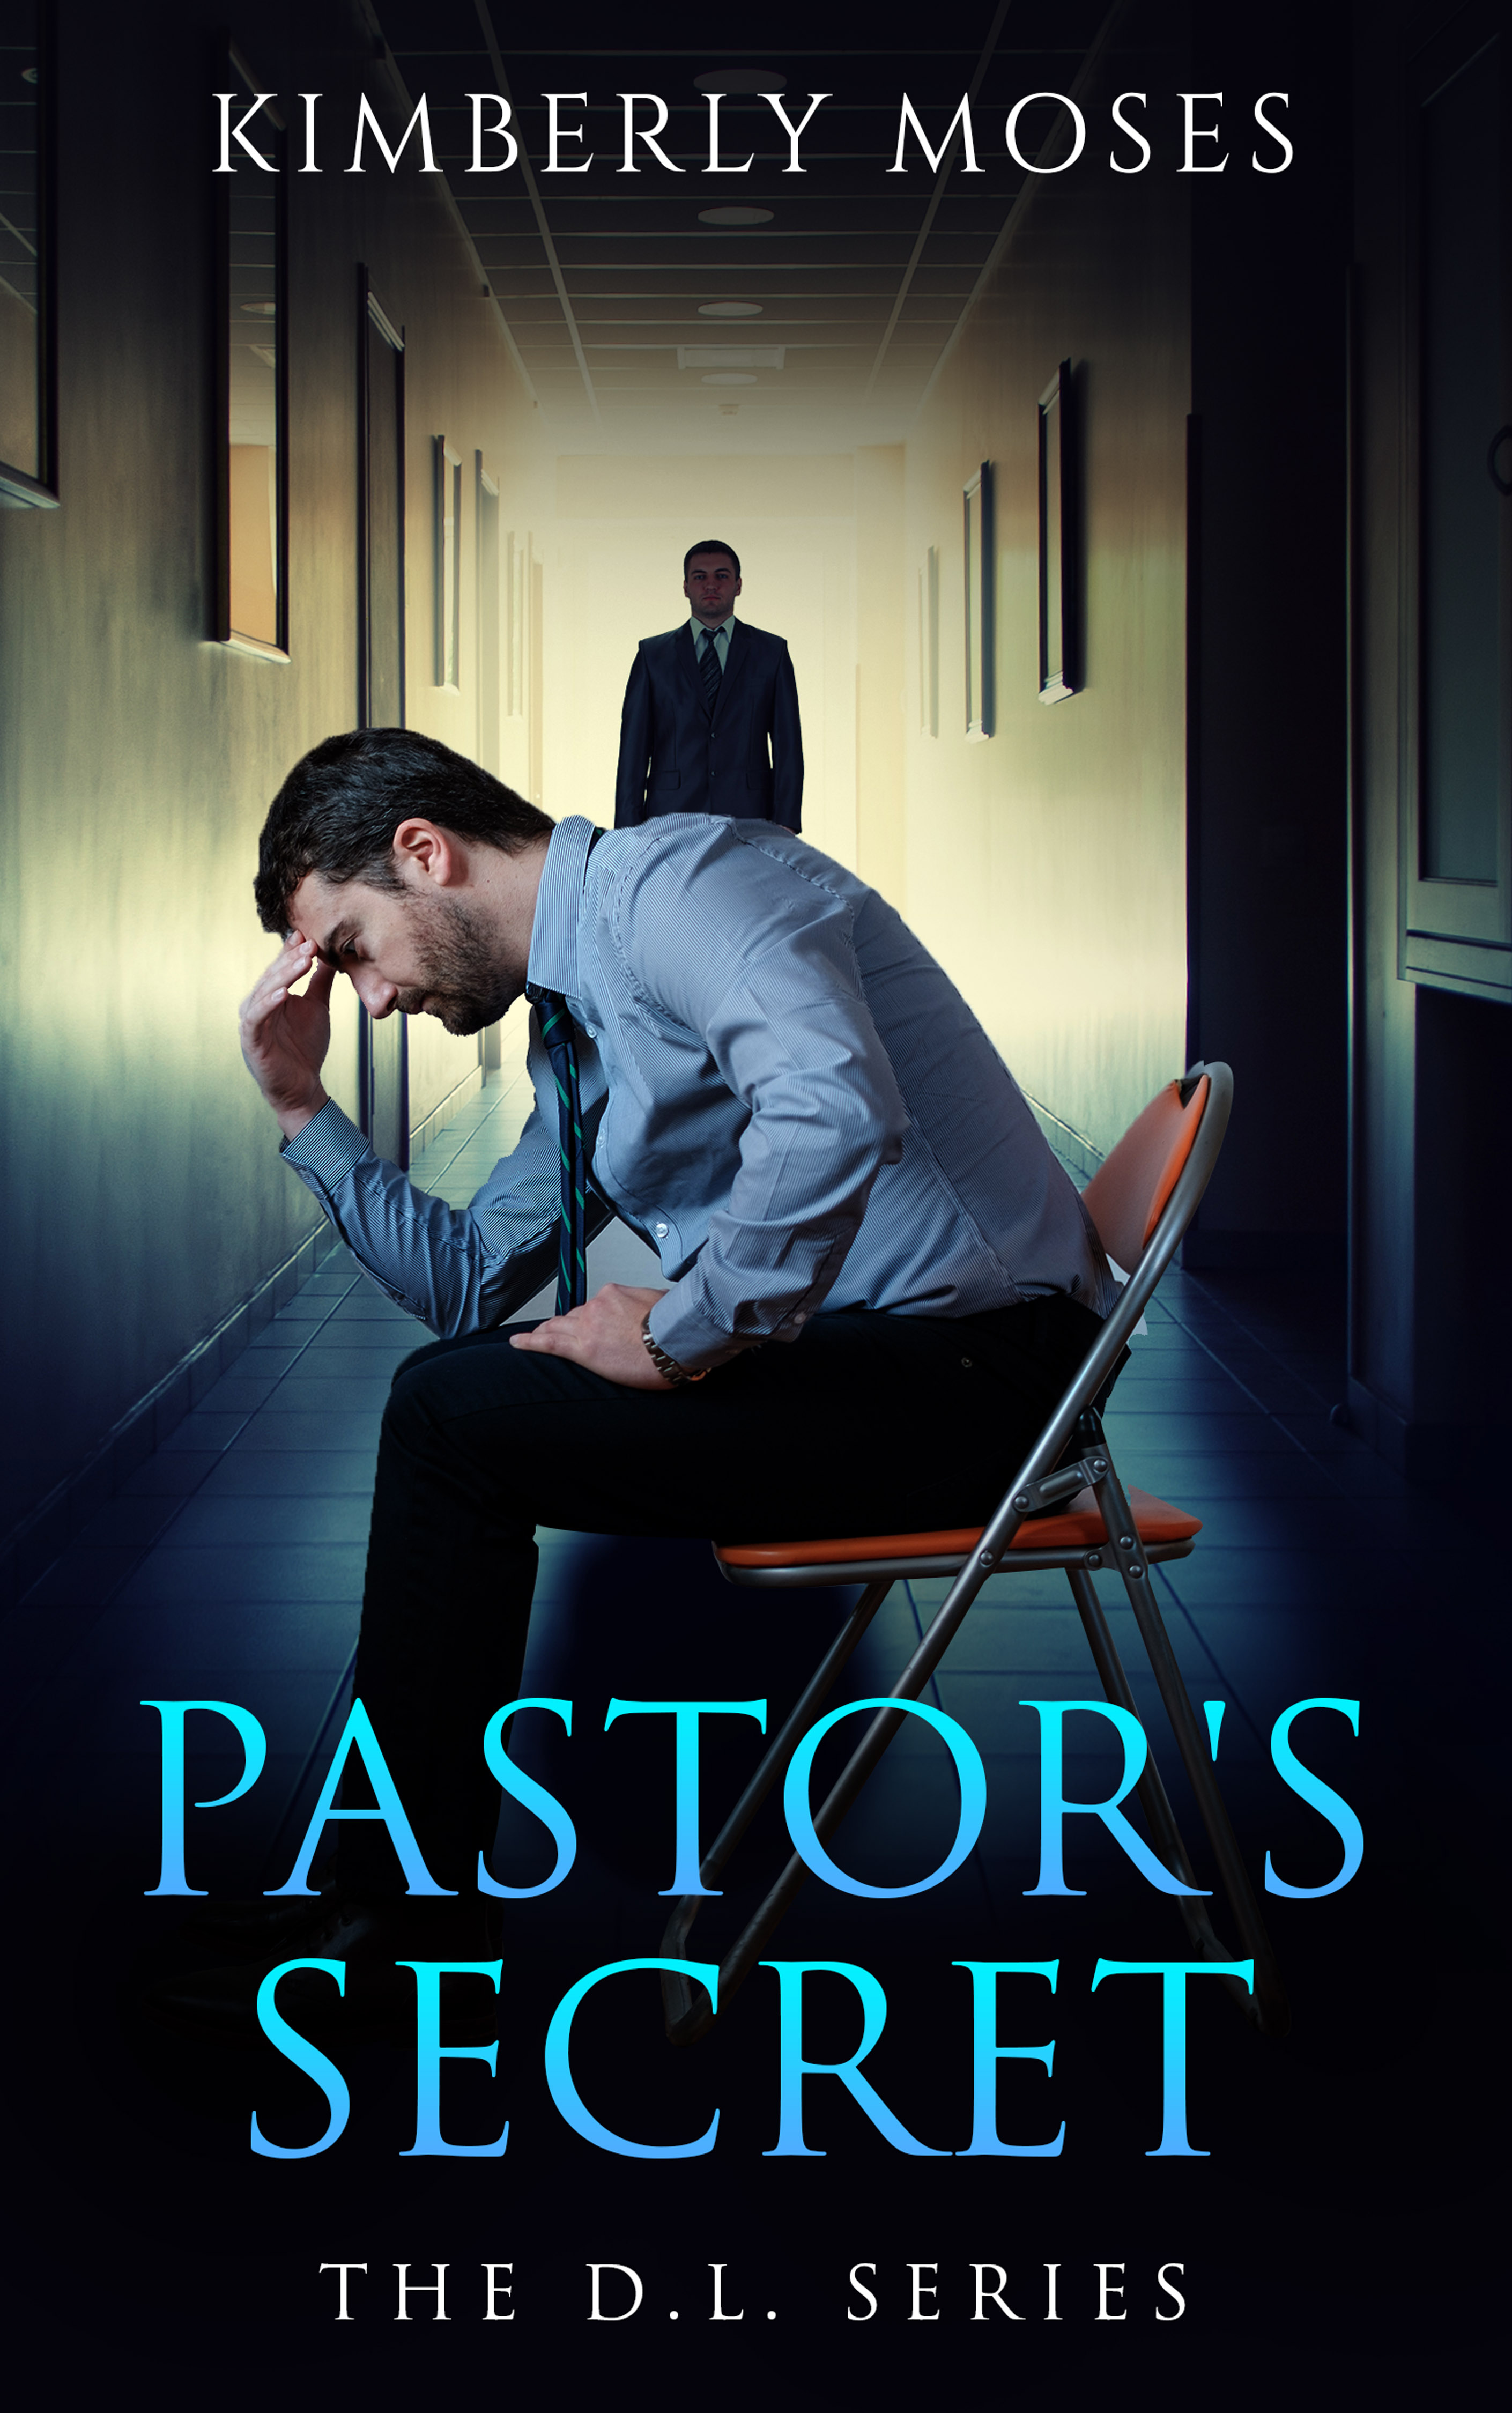 The Pastor's Secret: The D.L. Series